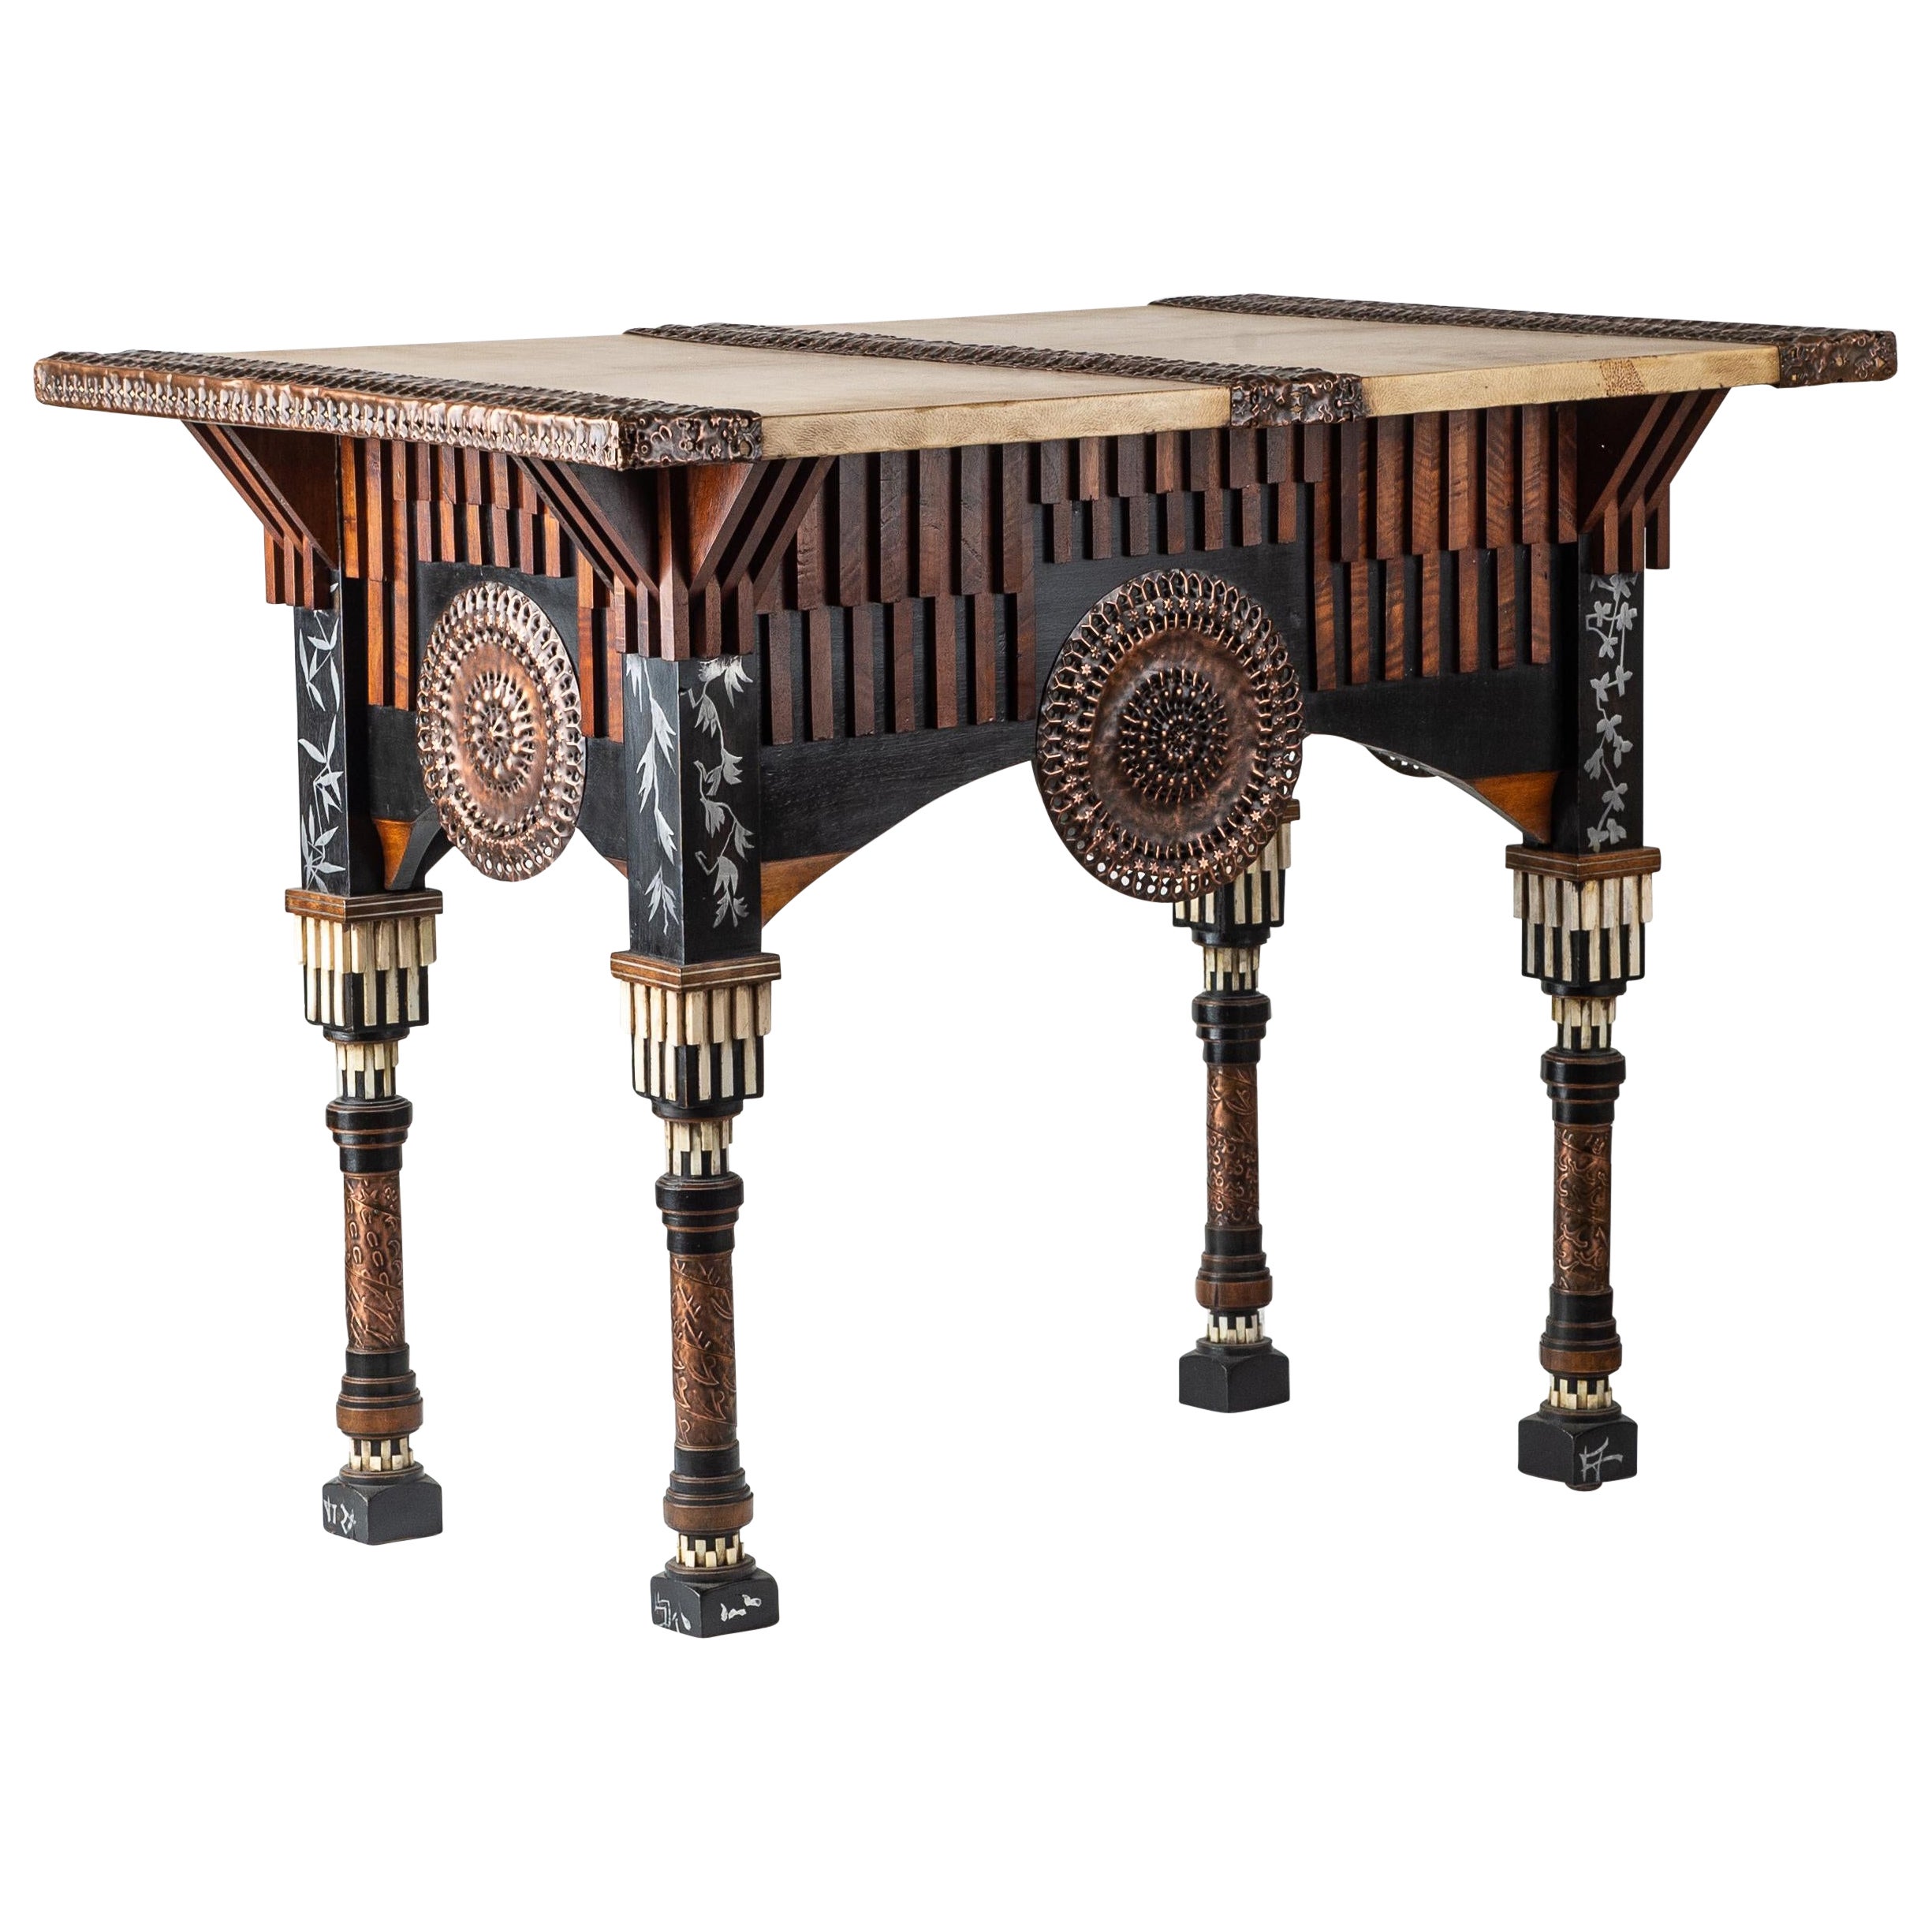 Late 19th Century Carlo Bugatti Large Centre Table with Vellum & Beaten Copper